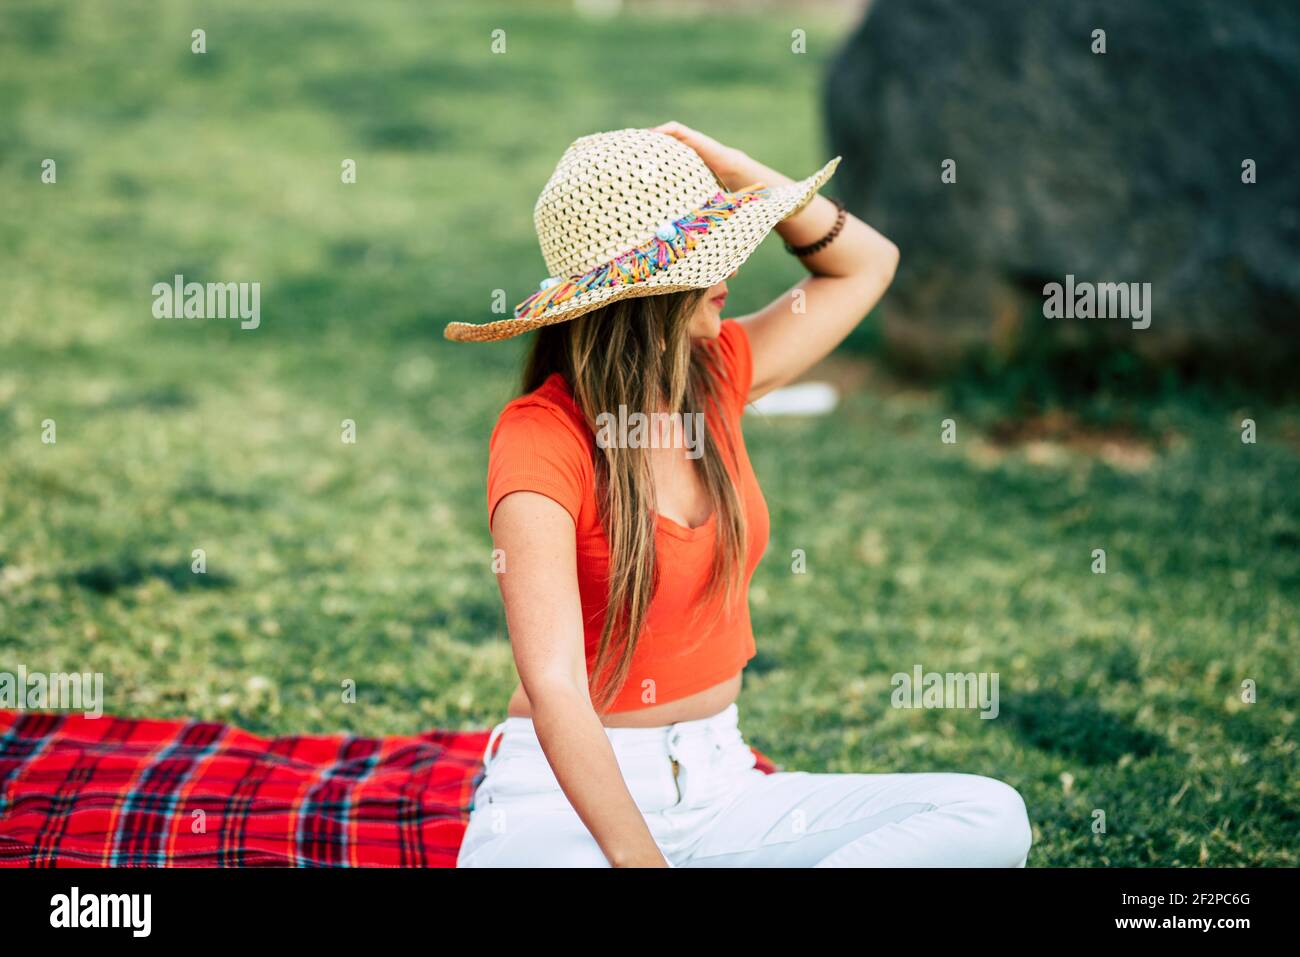 Mode junge Dame von hinten betrachtet entspannen und genießen Sie die blick auf den ozean sitzend auf dem Feld Gras mit Tasse Kaffee - Konzept der touristischen und Frühling Sommerferien Urlaub Aktivitäten im Freien Stockfoto